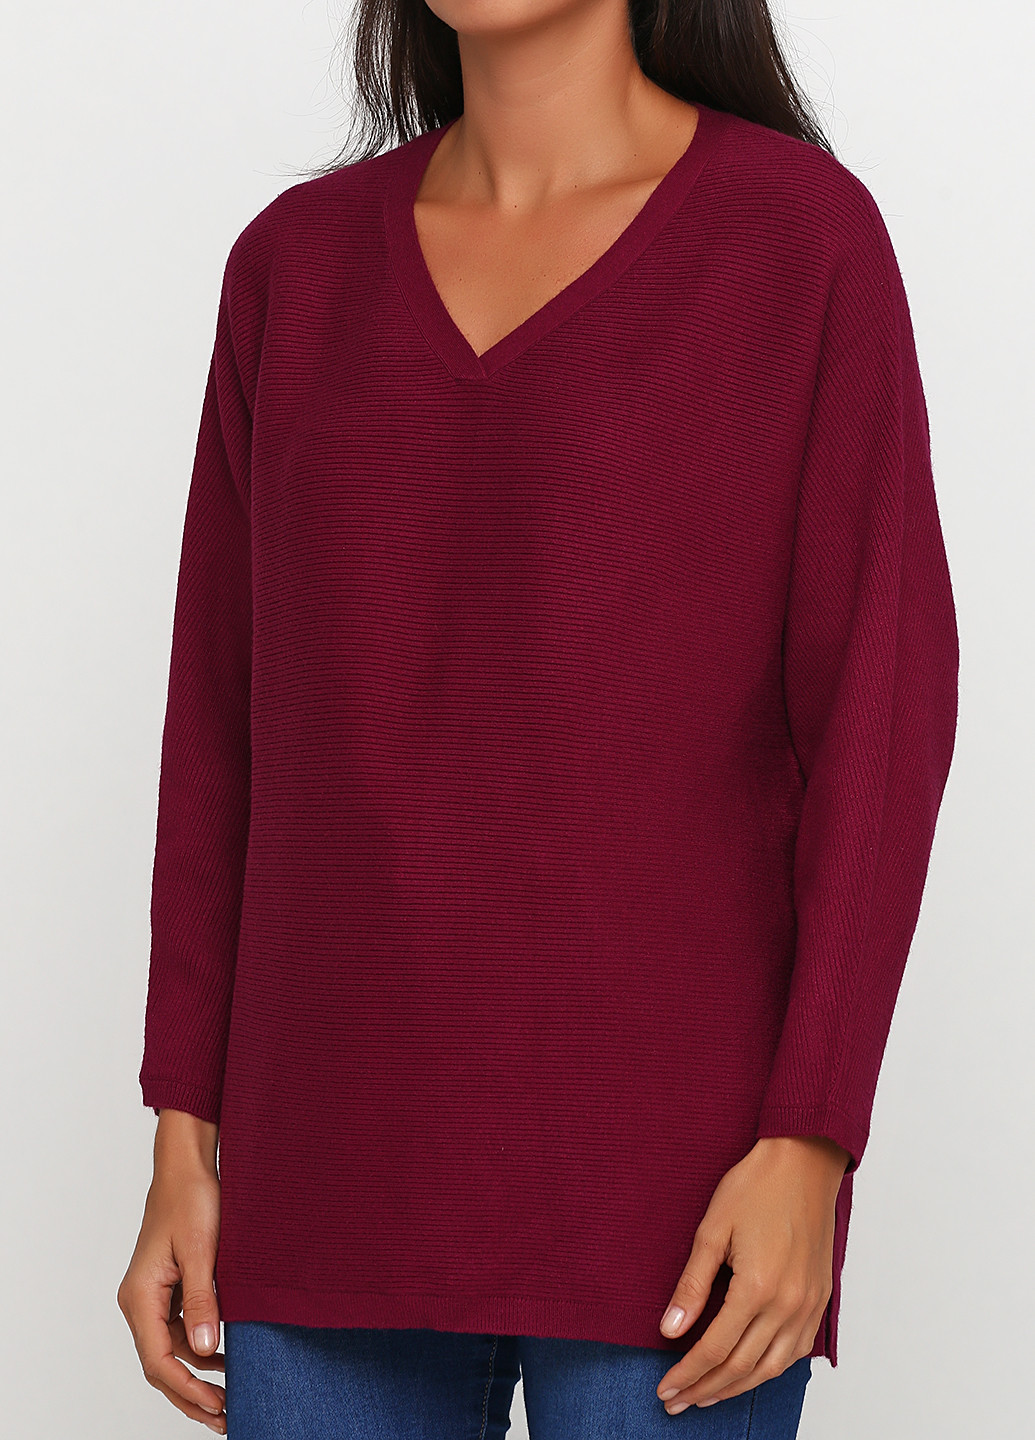 Фуксиновый демисезонный пуловер пуловер S.Oliver